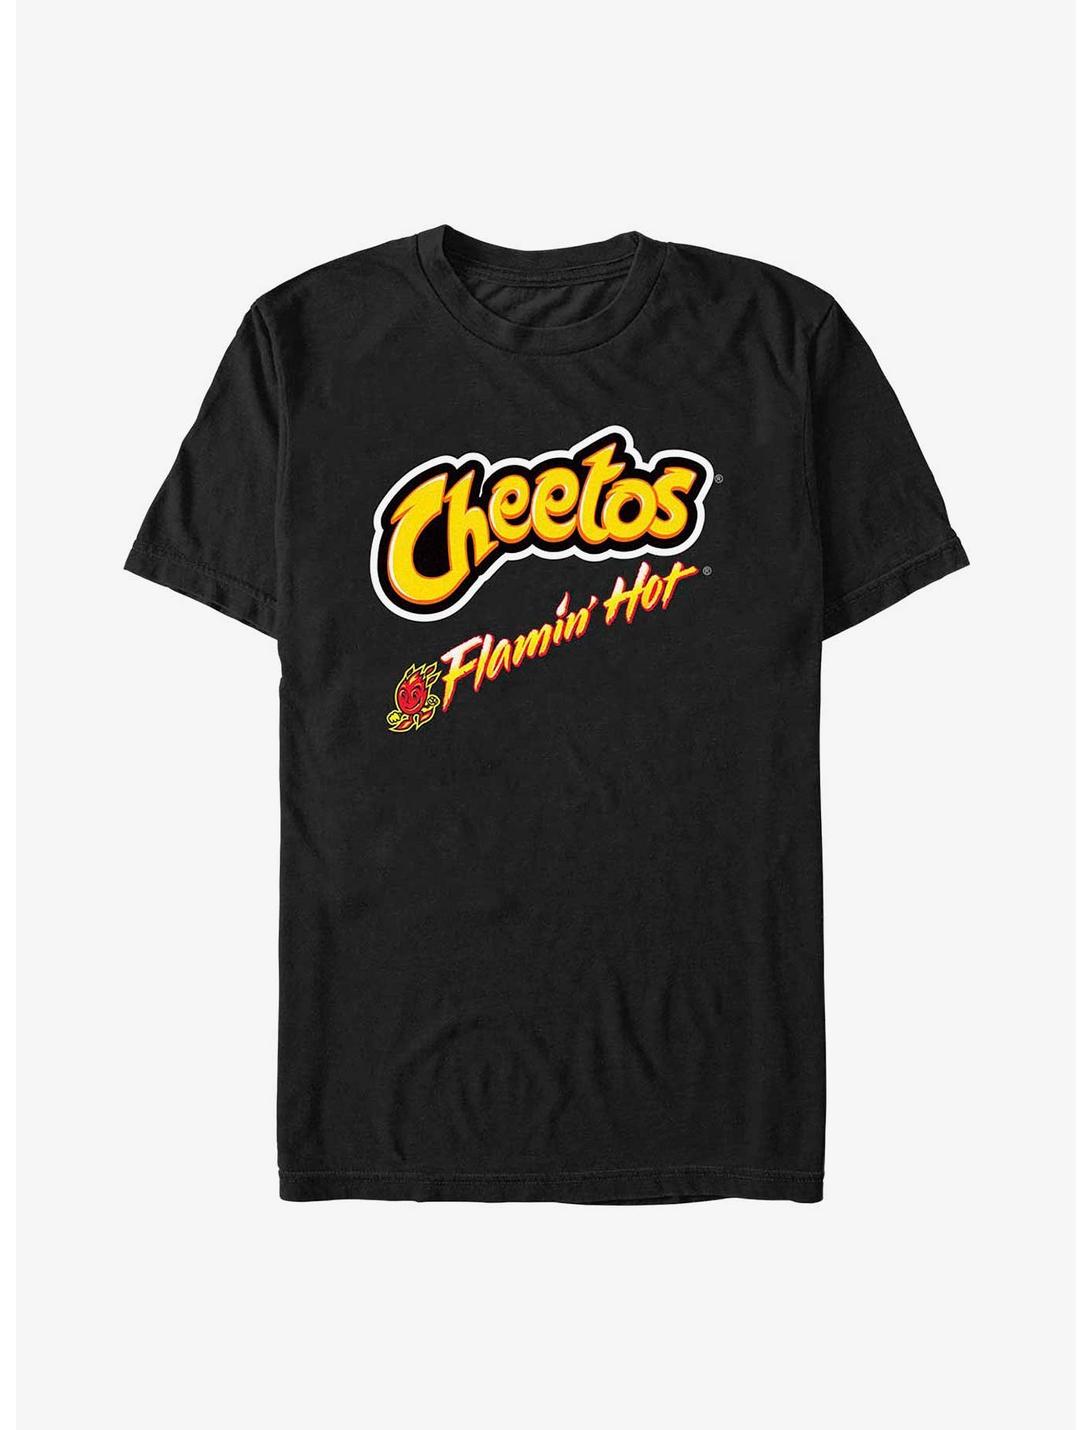 Cheetos Flamin' Hot Fires T-Shirt, BLACK, hi-res